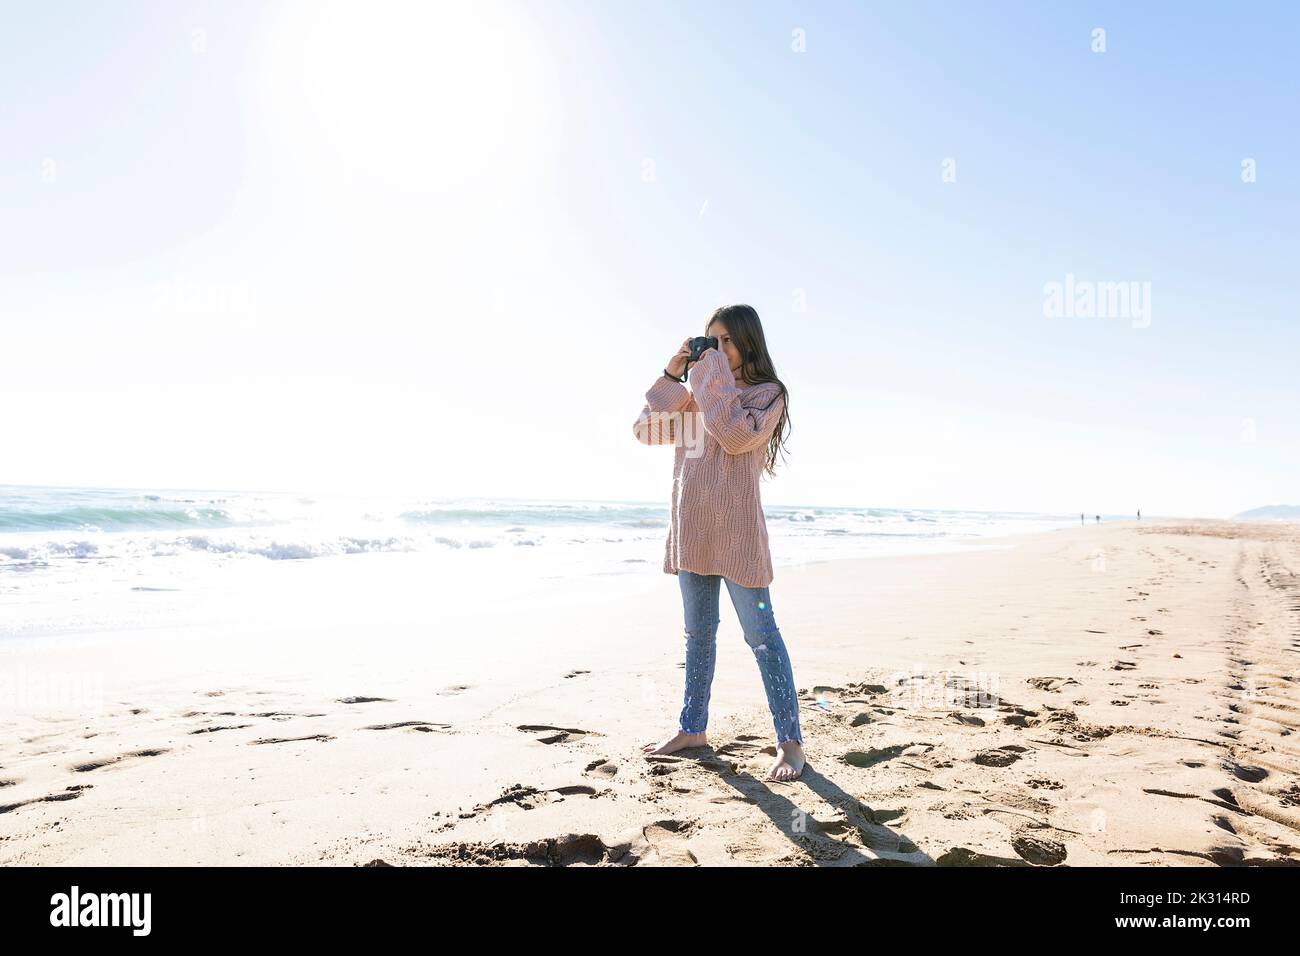 Fille debout avec un appareil photo prenant des photos à la plage Banque D'Images